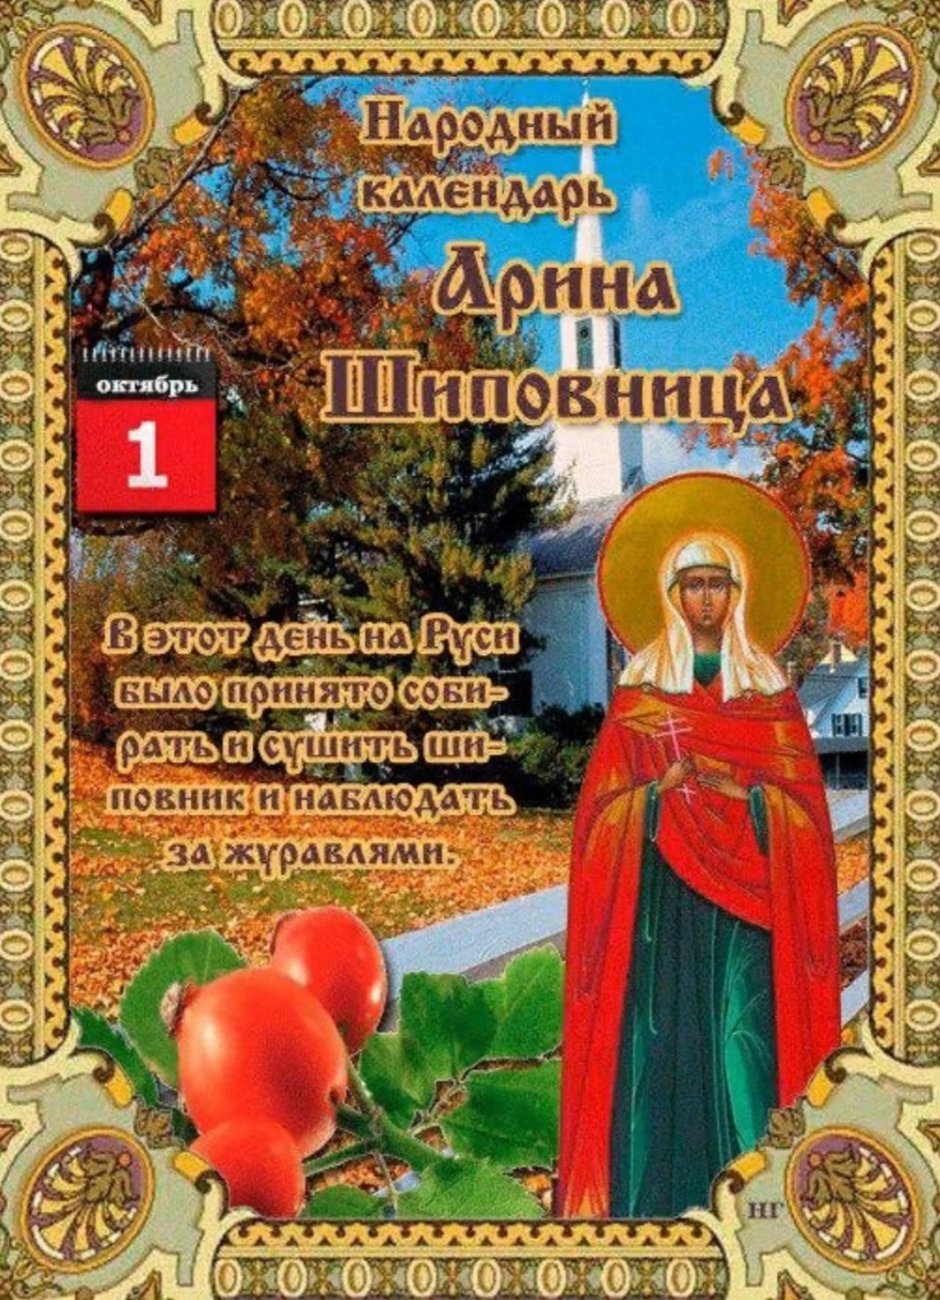 1 Октября - Арина Шиповница, народные праздники